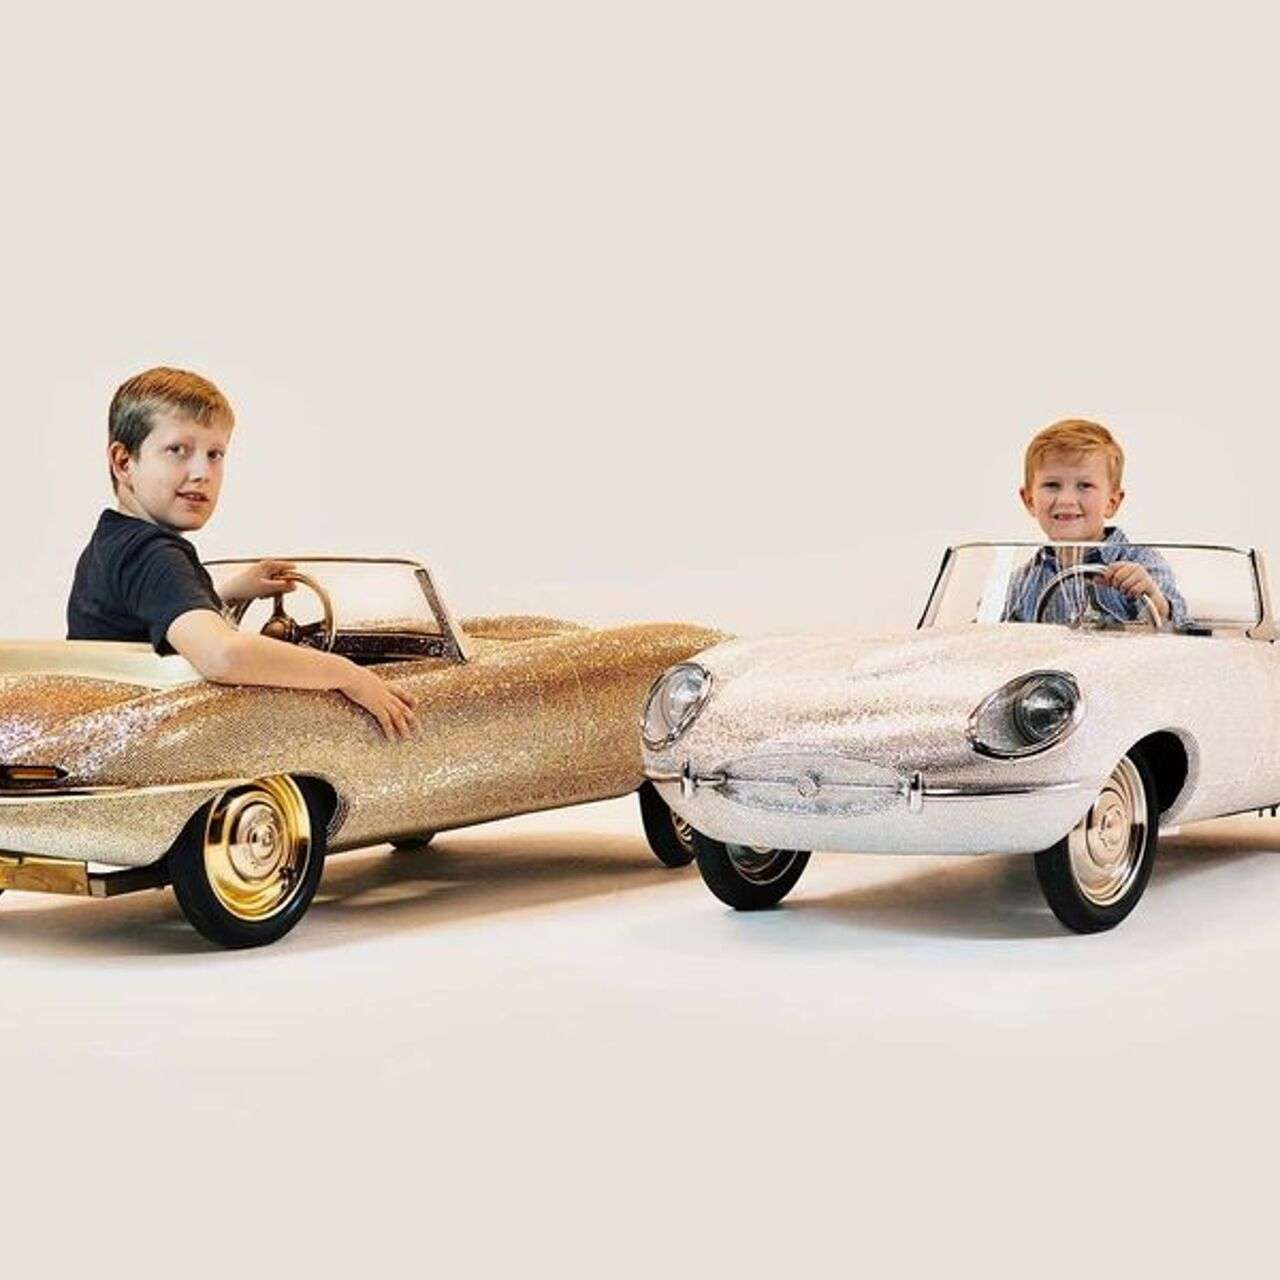 kak u papy detskie benzinovye superkary kopii legendarnyh avtomobilej